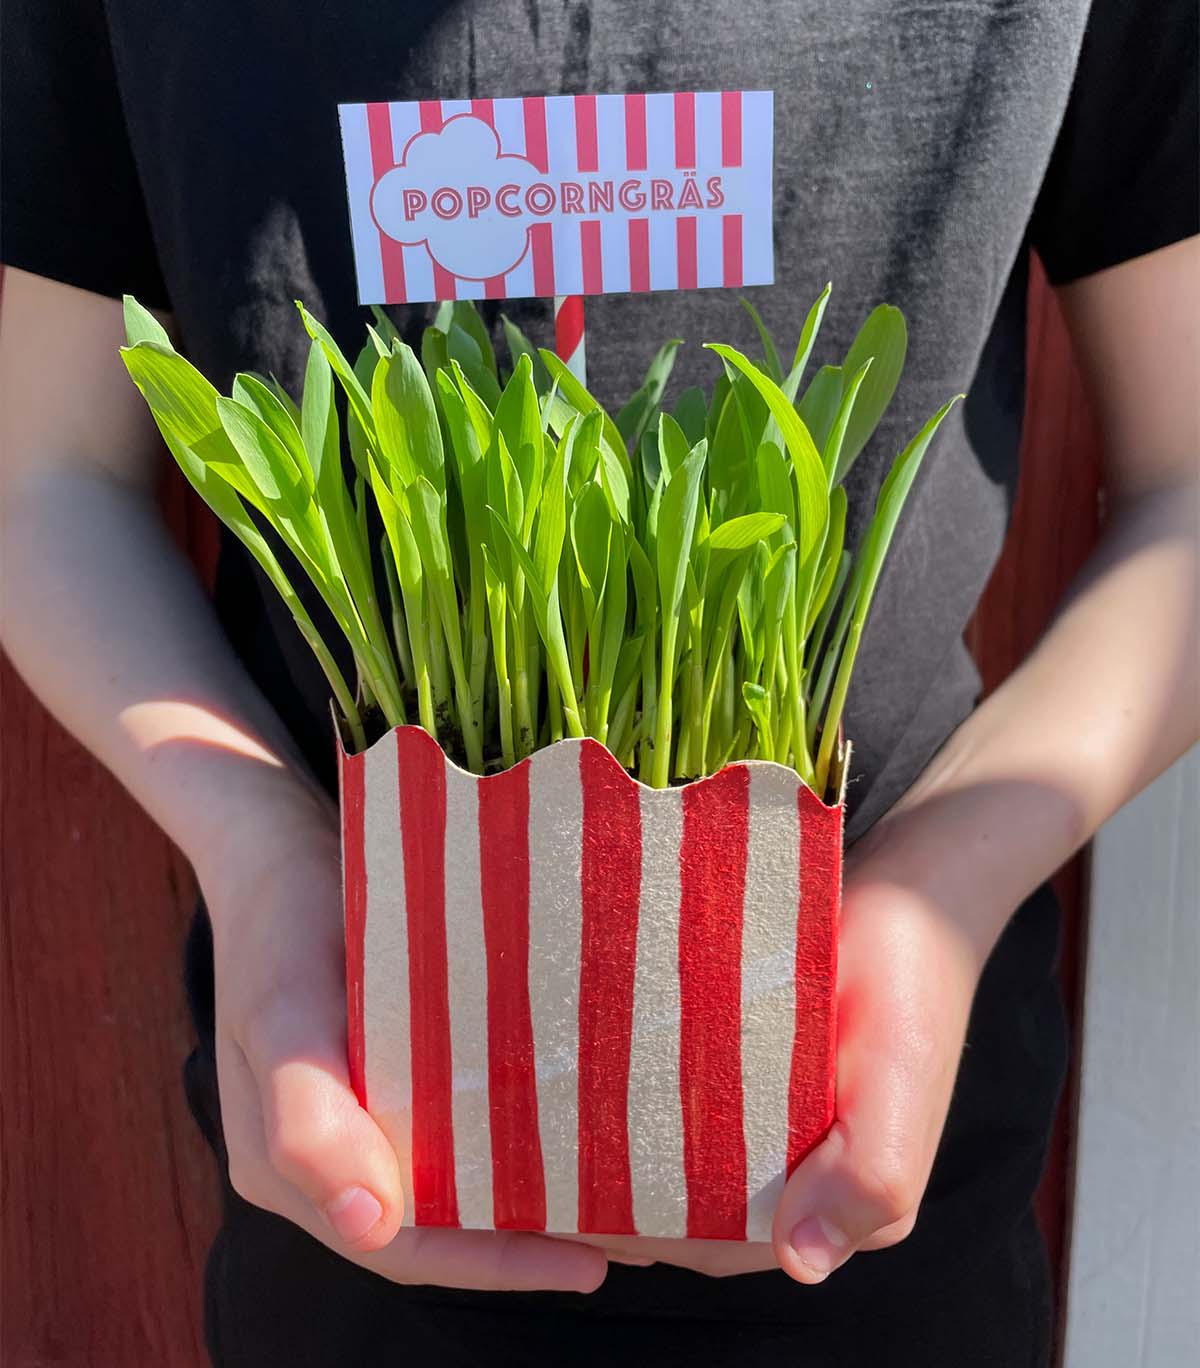 Ge bort popcorngräs i popcornbägare